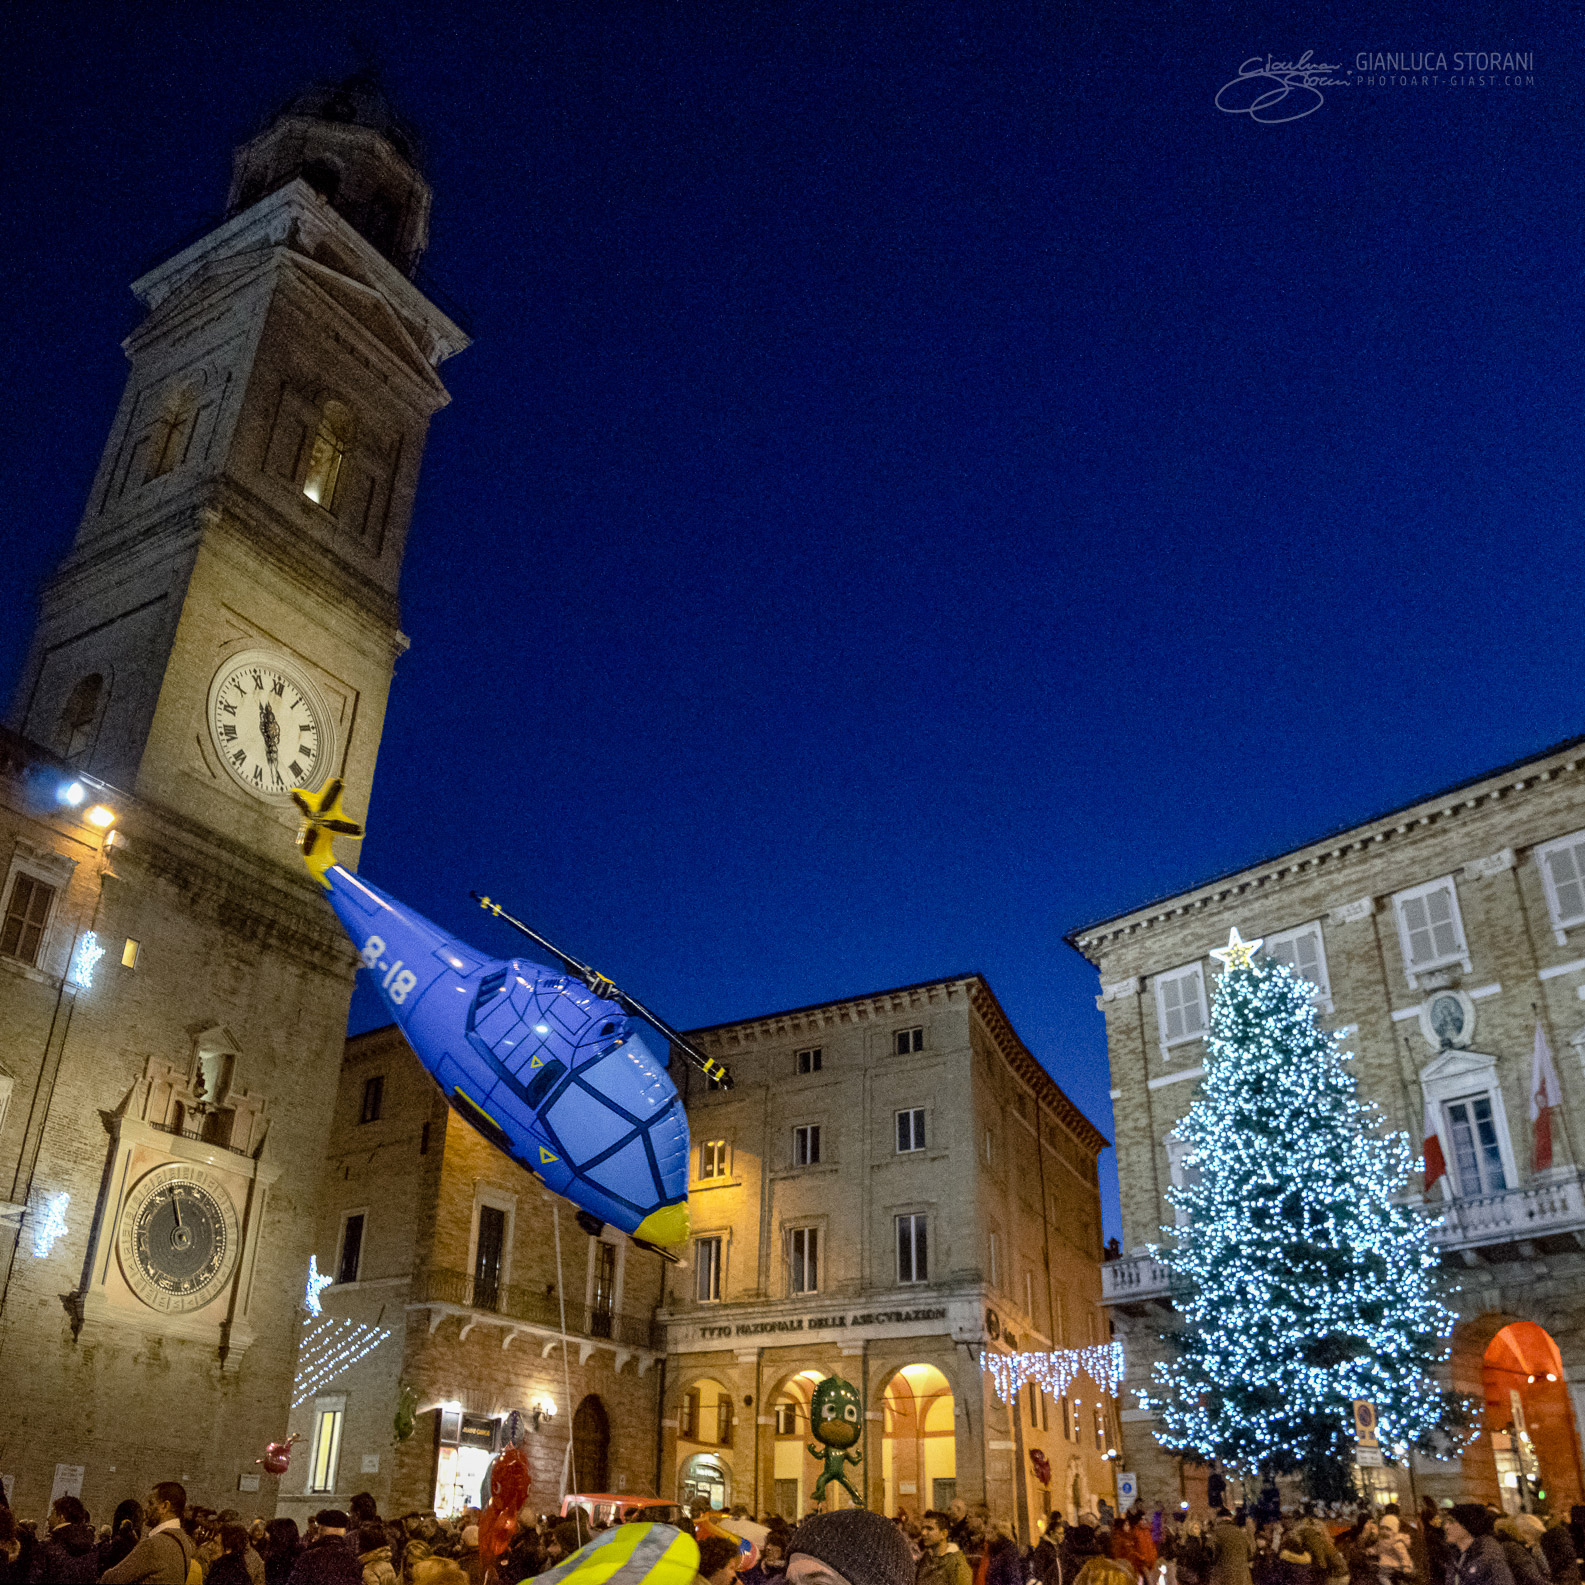 Festa della Befana 2018 di Macerata - Gianluca Storani Photo Art (ID: 4-7586)